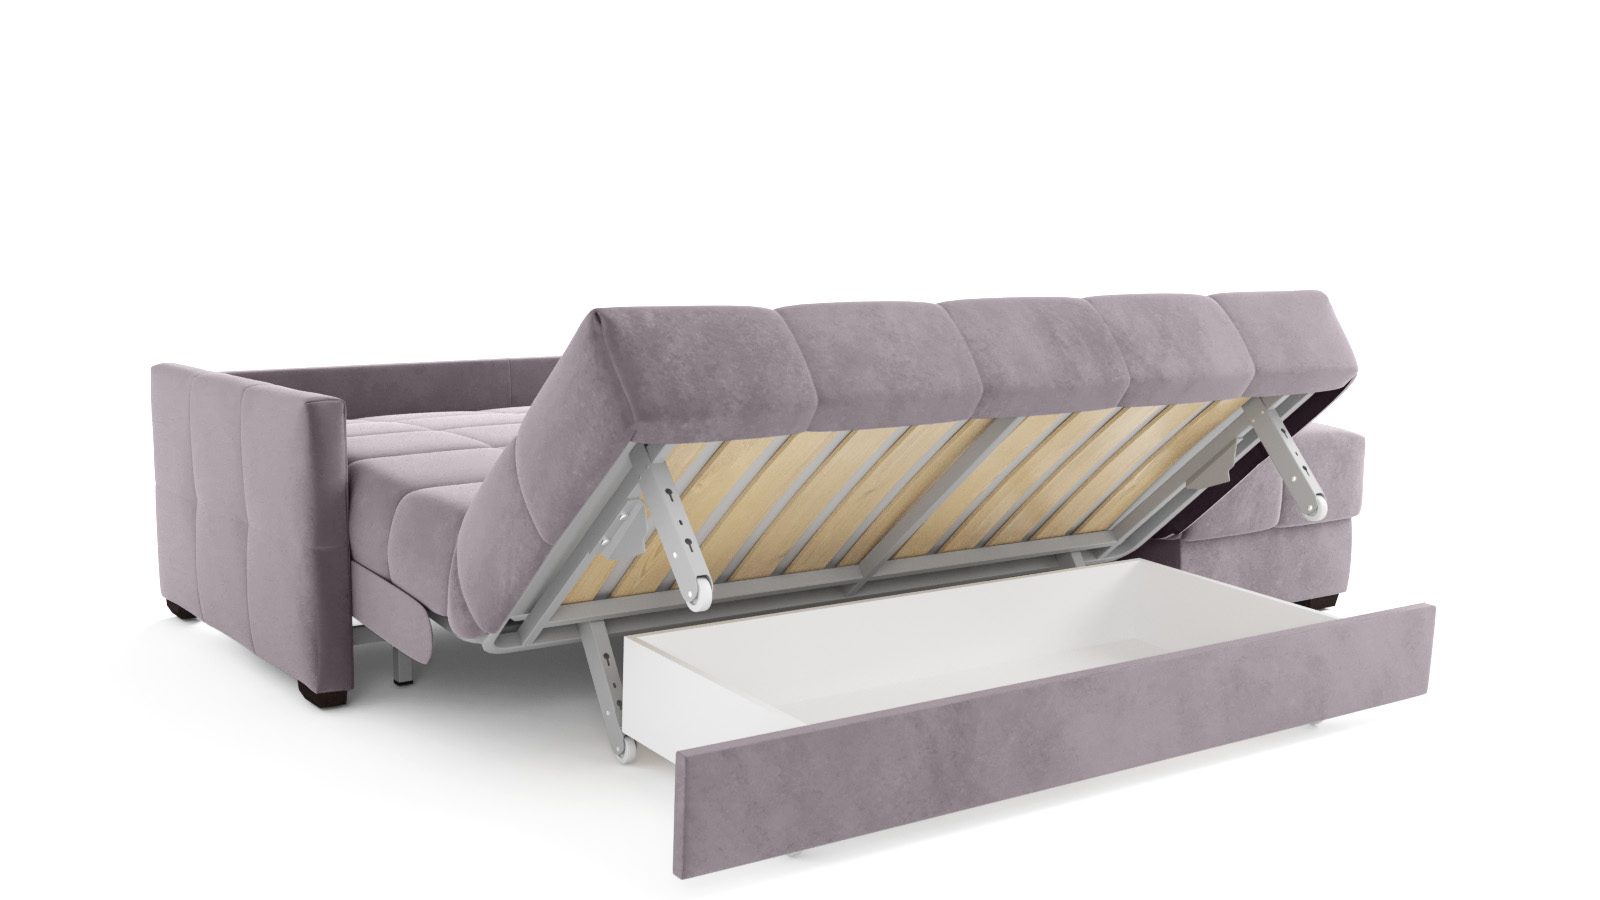 кровать с пм 200 160 orlando тк casanova lilac